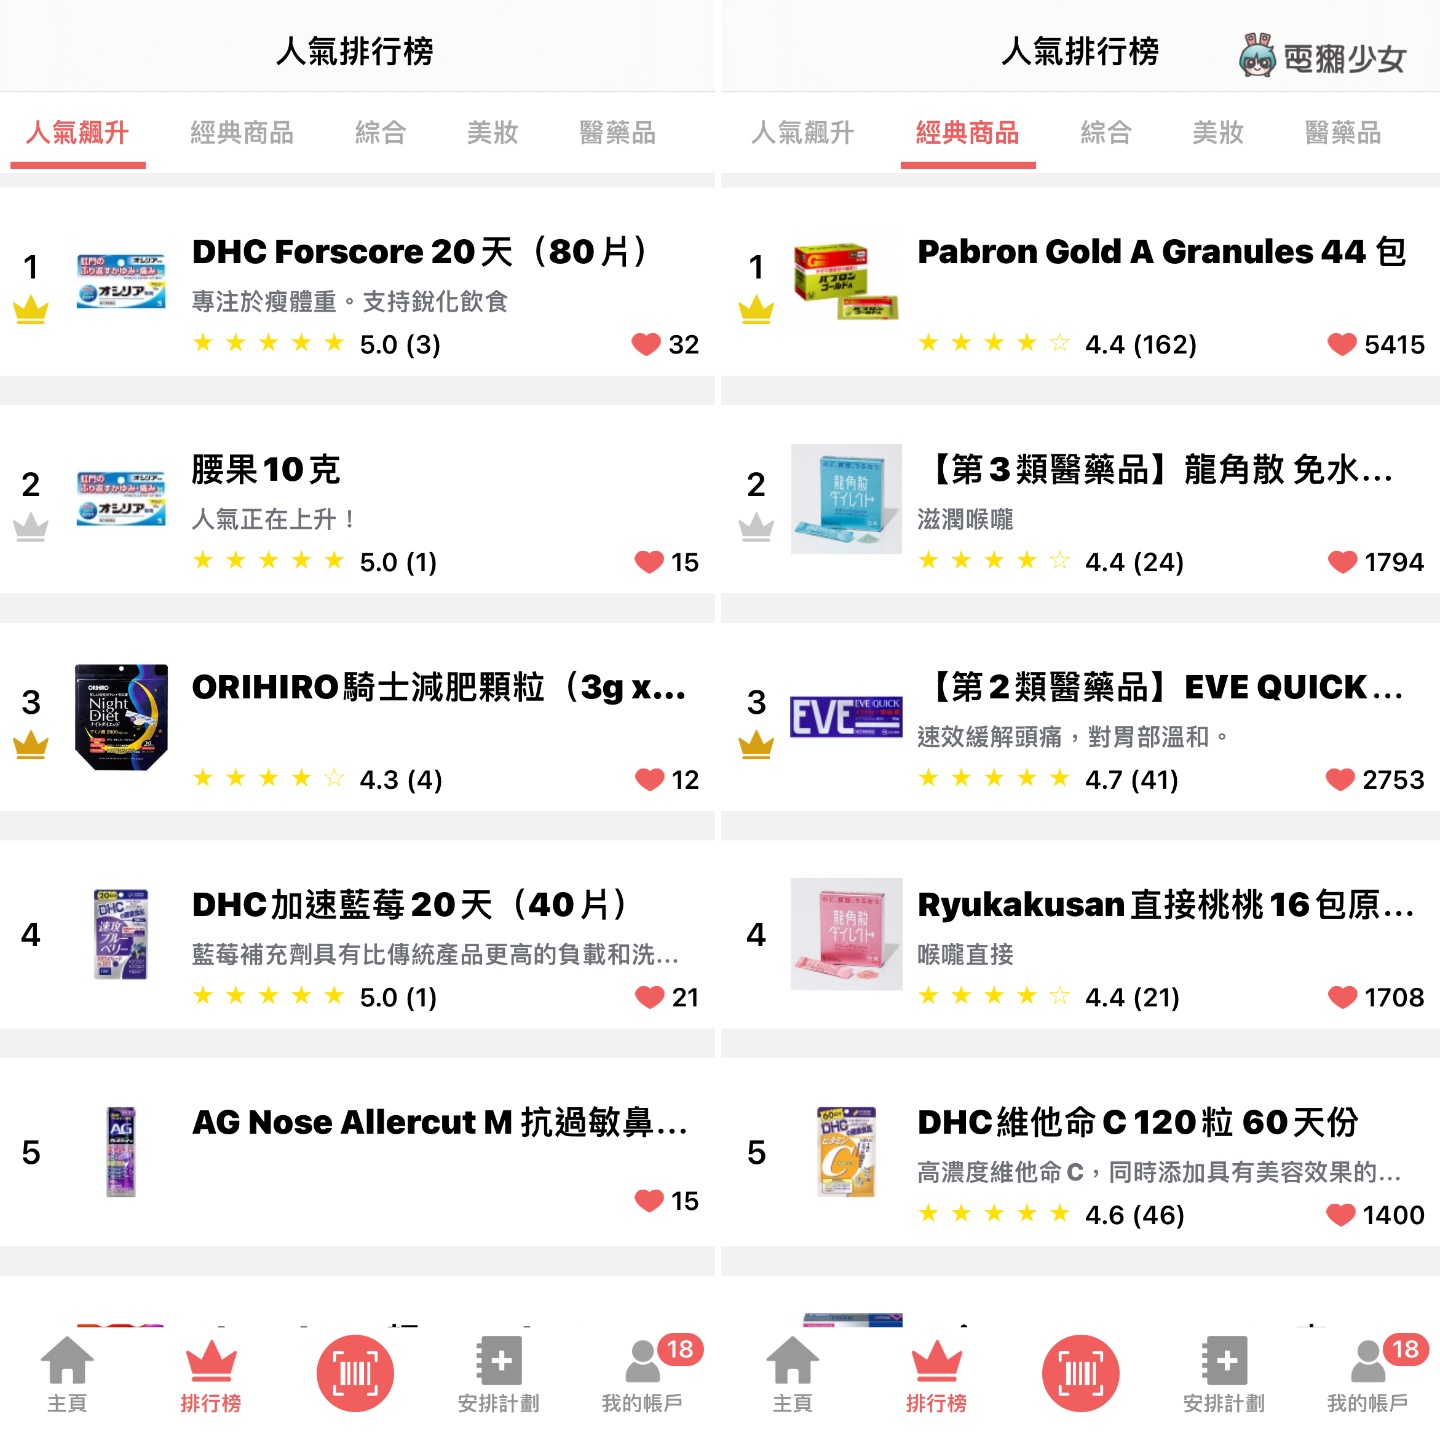 逛日本藥妝店必備 App !  用 Payke 掃條碼一秒翻譯商品資訊